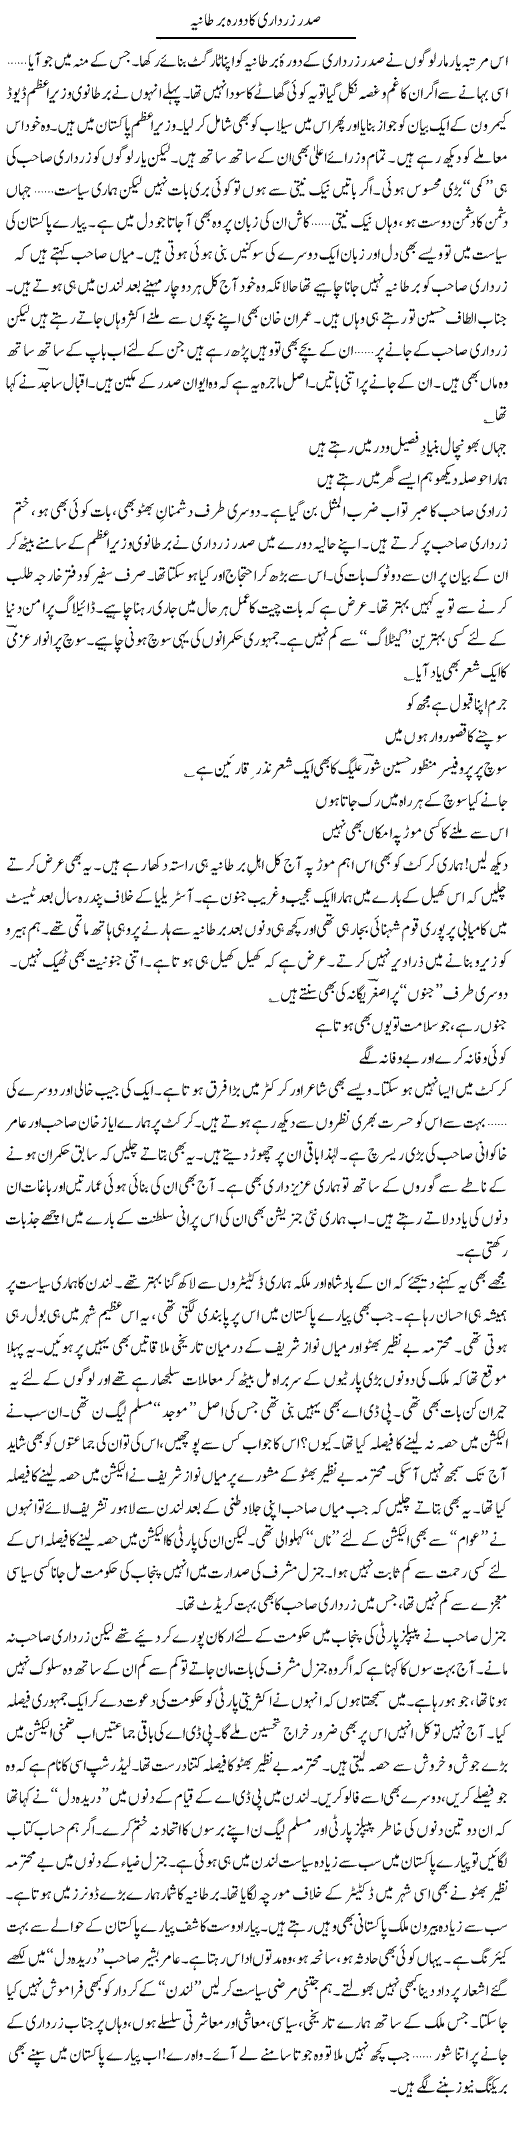 Zardari Ka Dora UK Express Column Ijaz Hafeez 11 August 2010